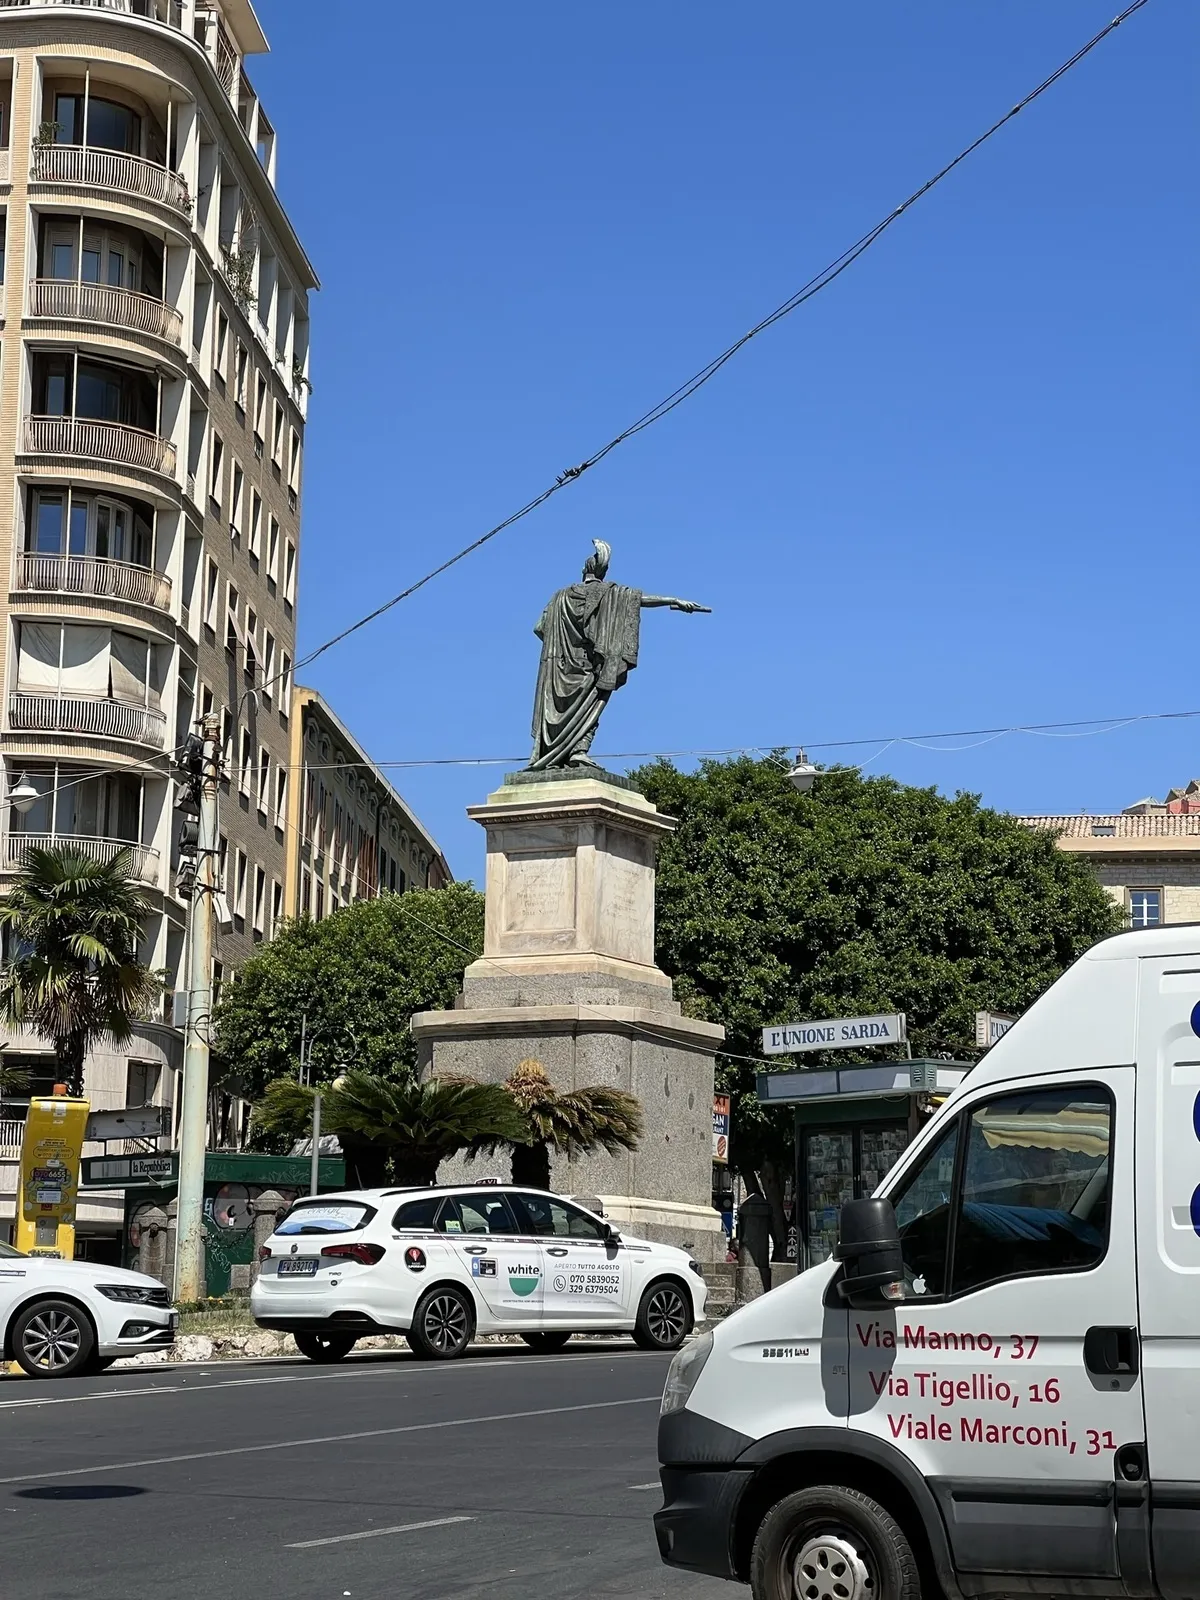 A monument in Cagliari